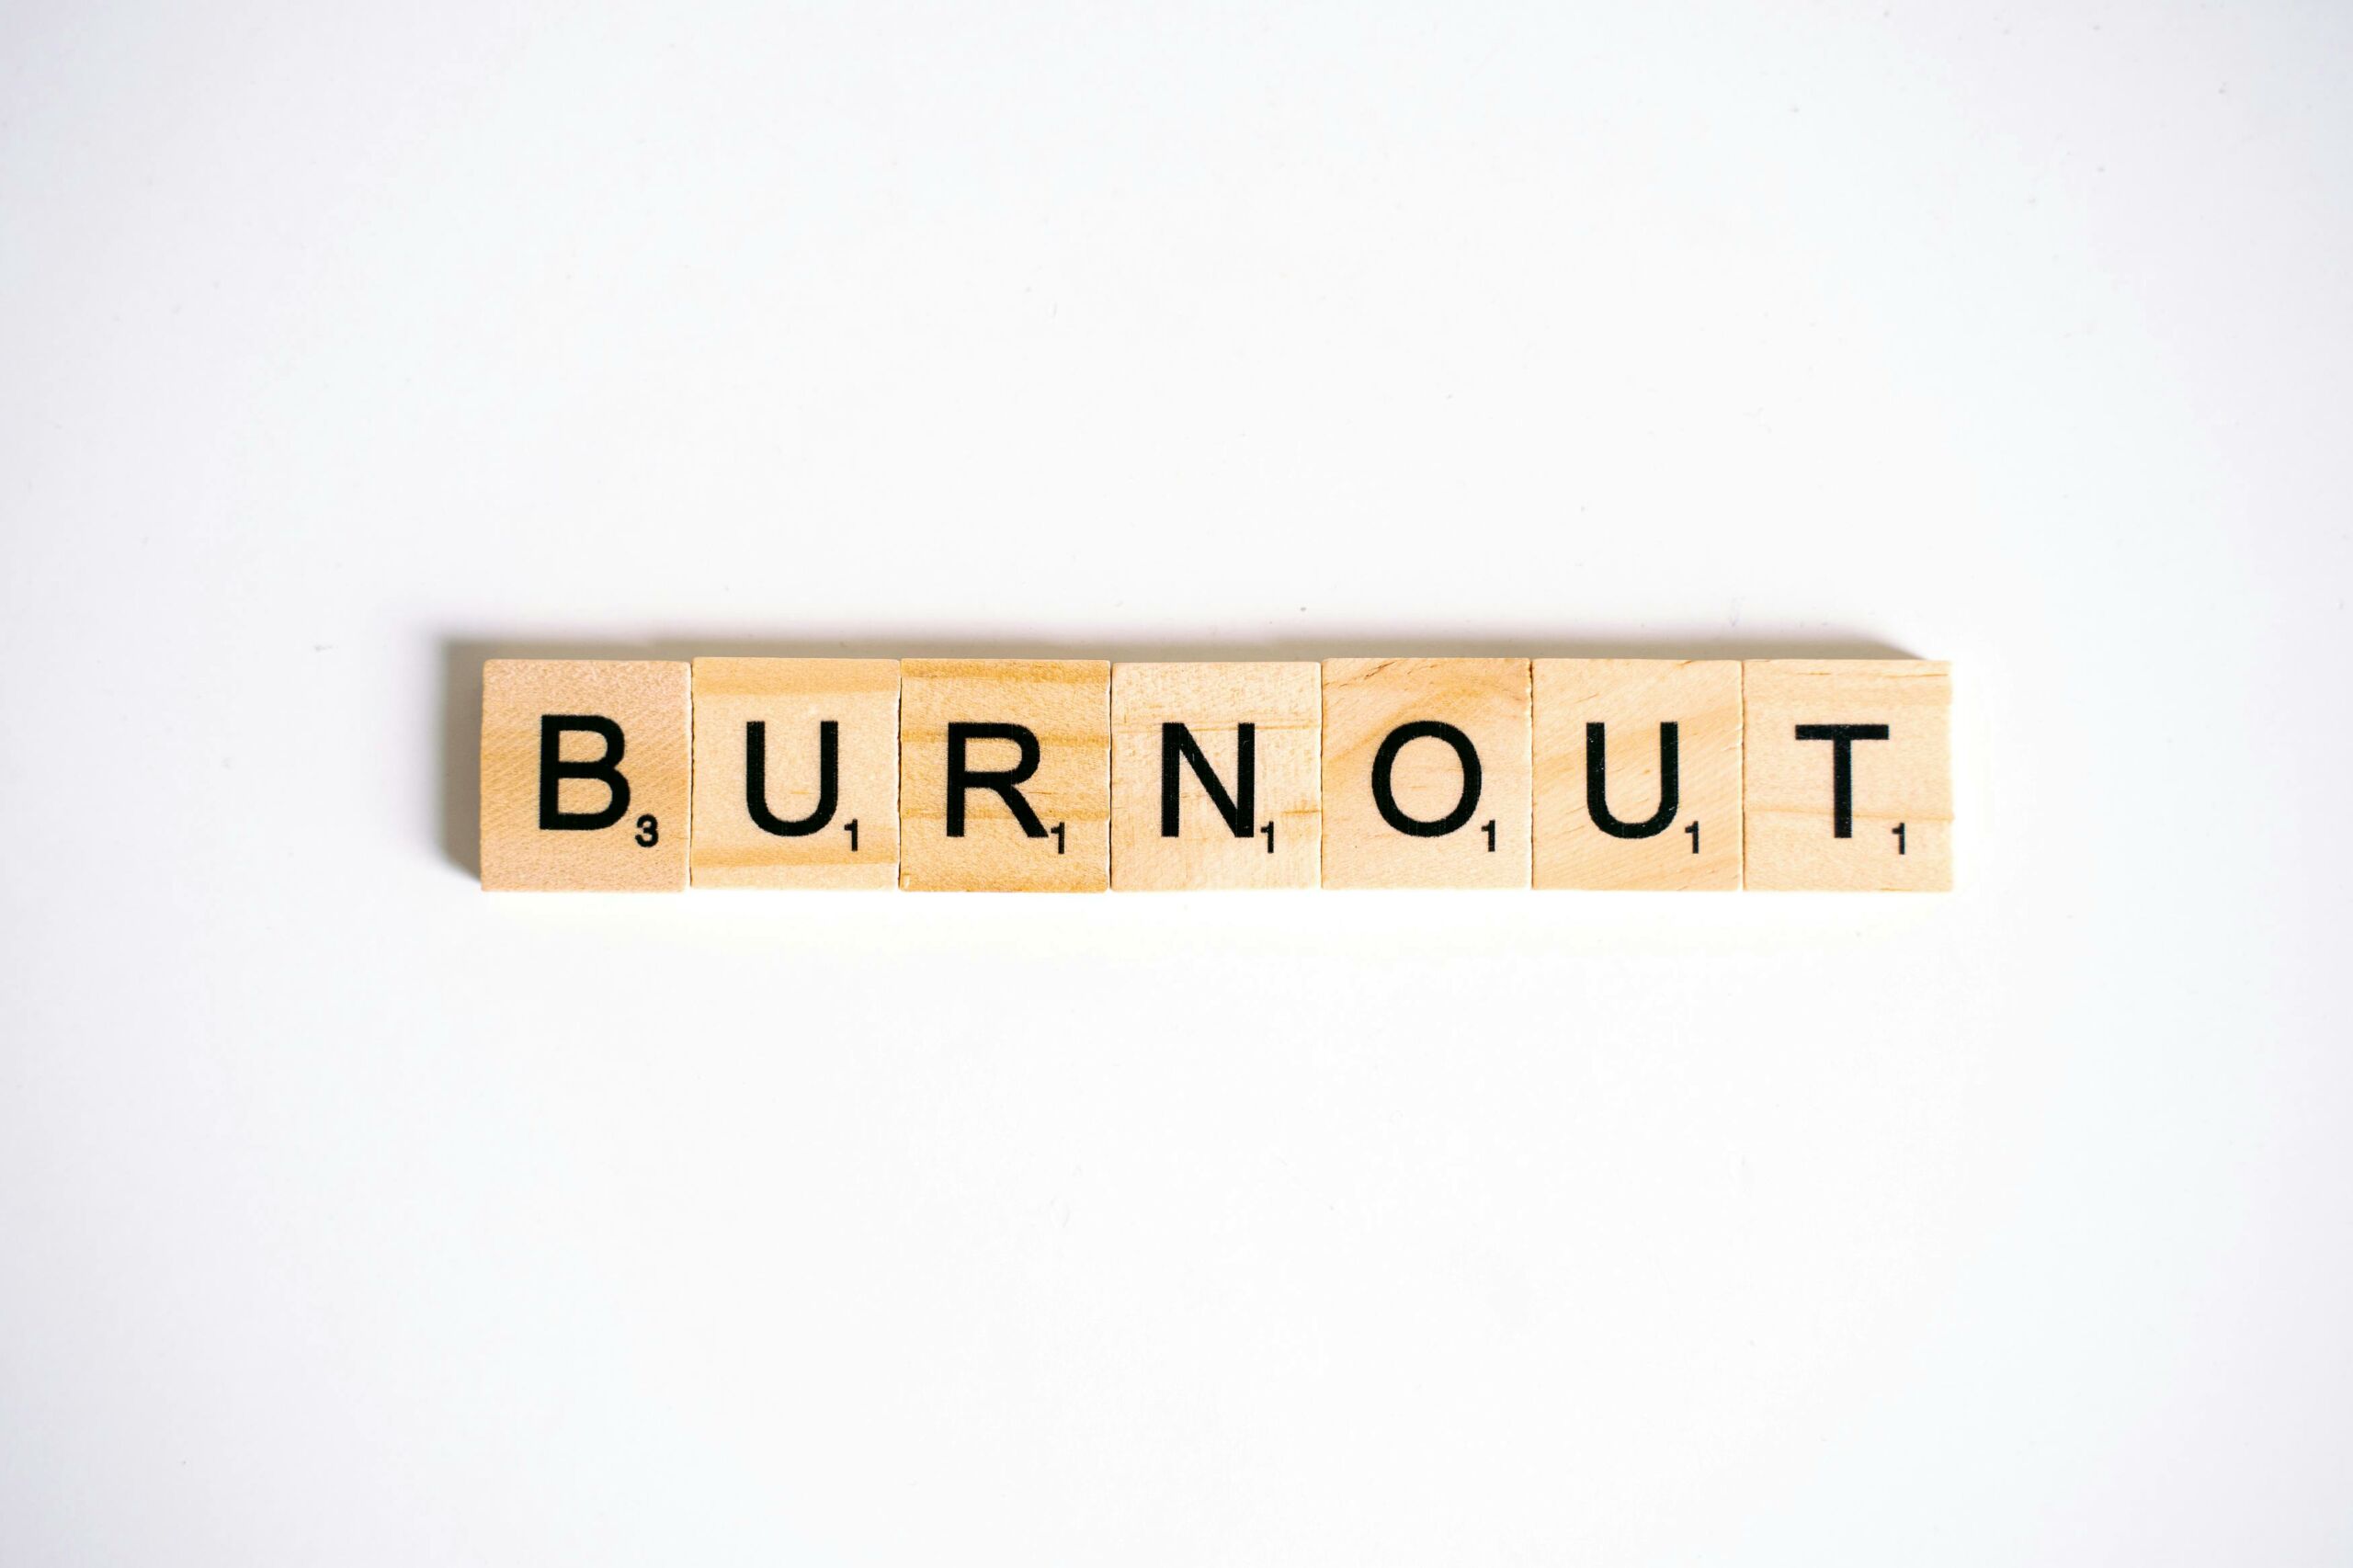 Job burnout